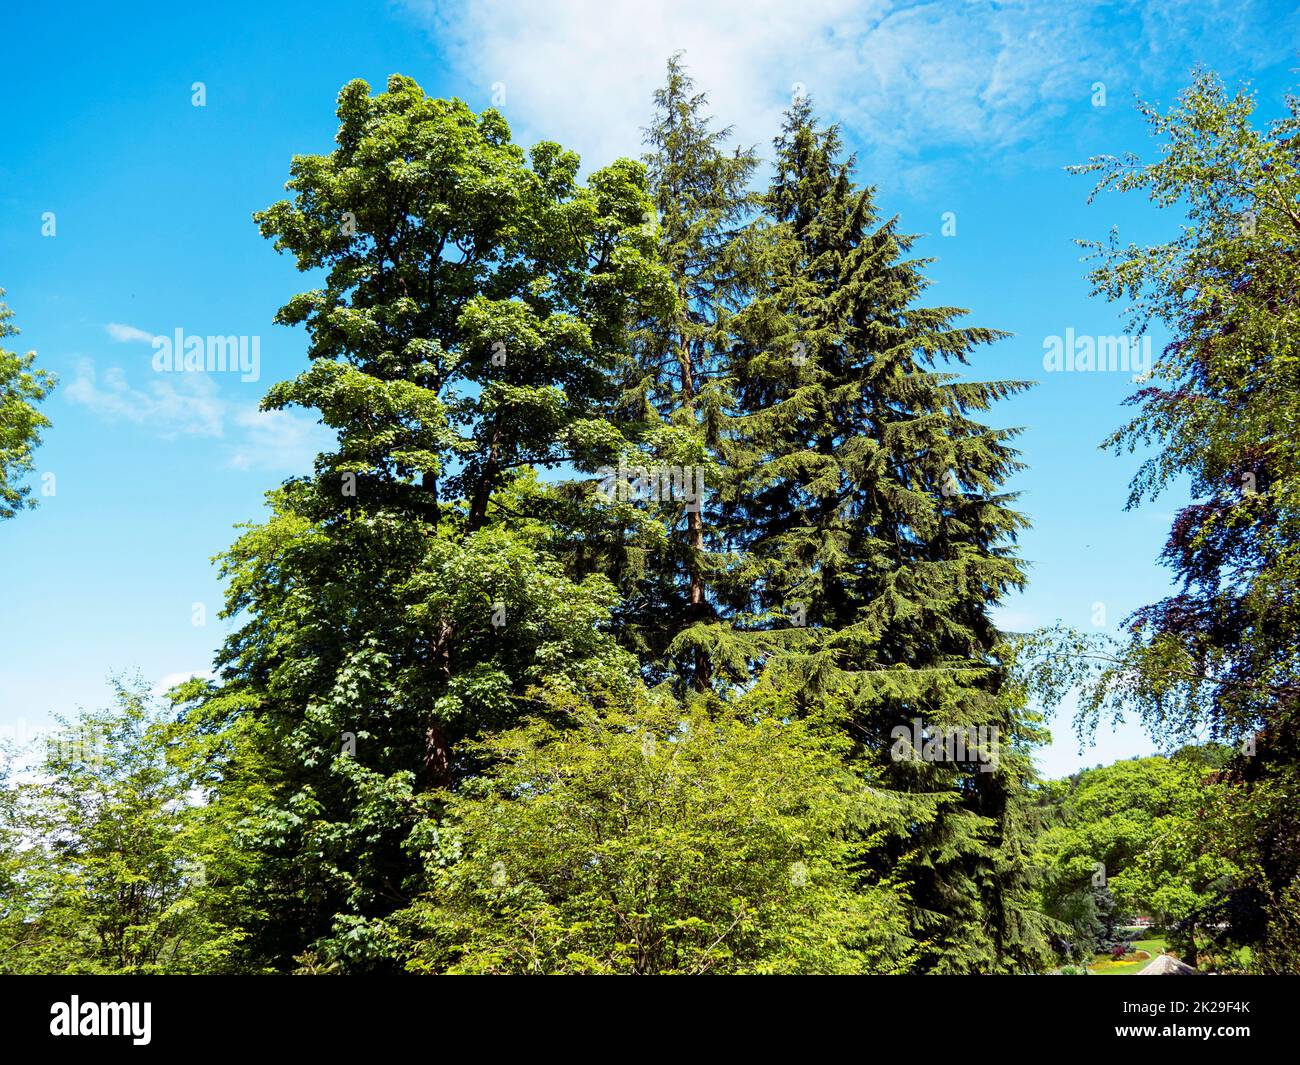 Bäume in einem Garten mit grünem Laub und einem blauen Himmel Hintergrund Stockfoto